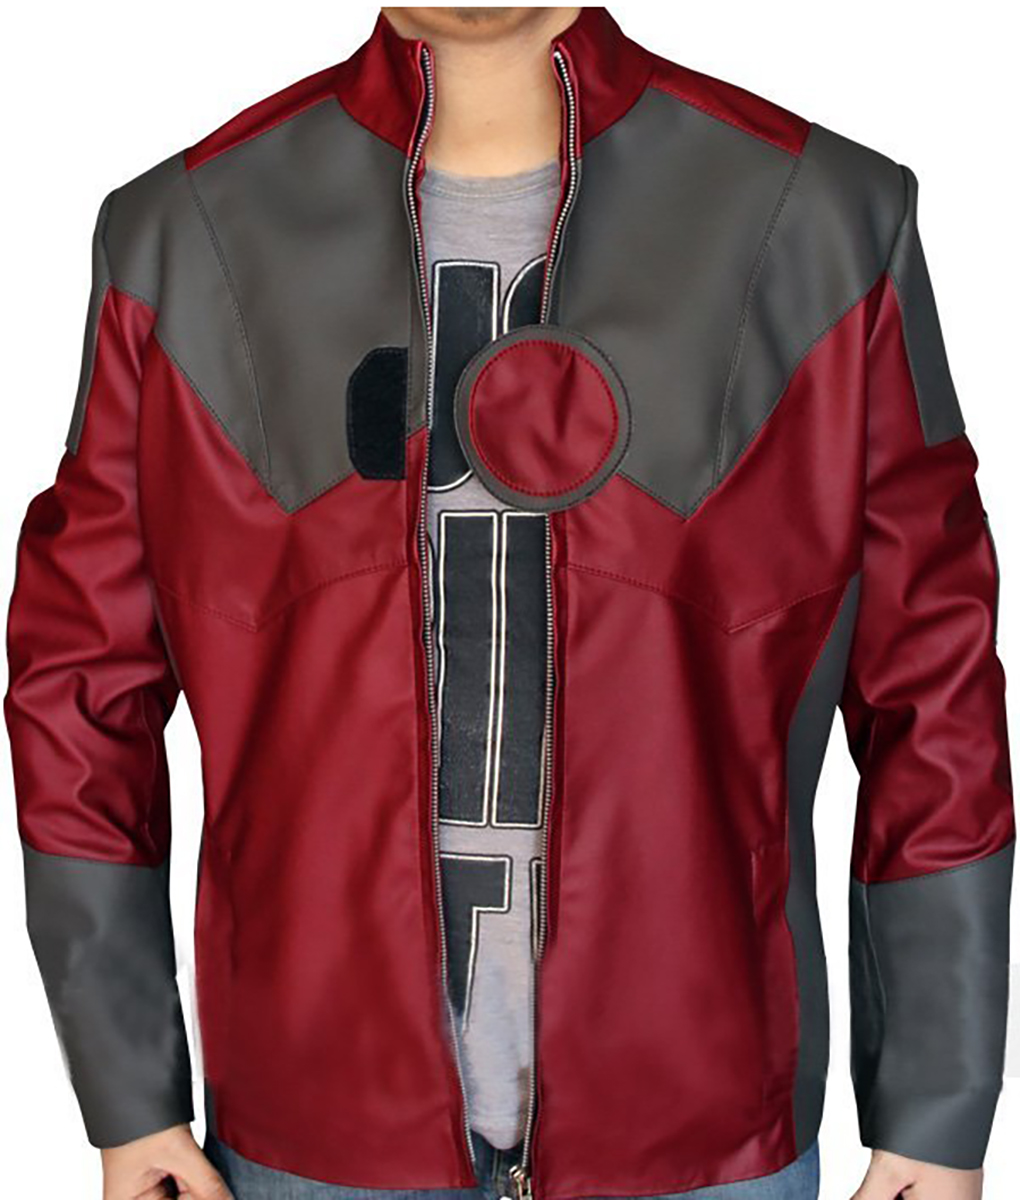 Iron Man Leather Jacket2